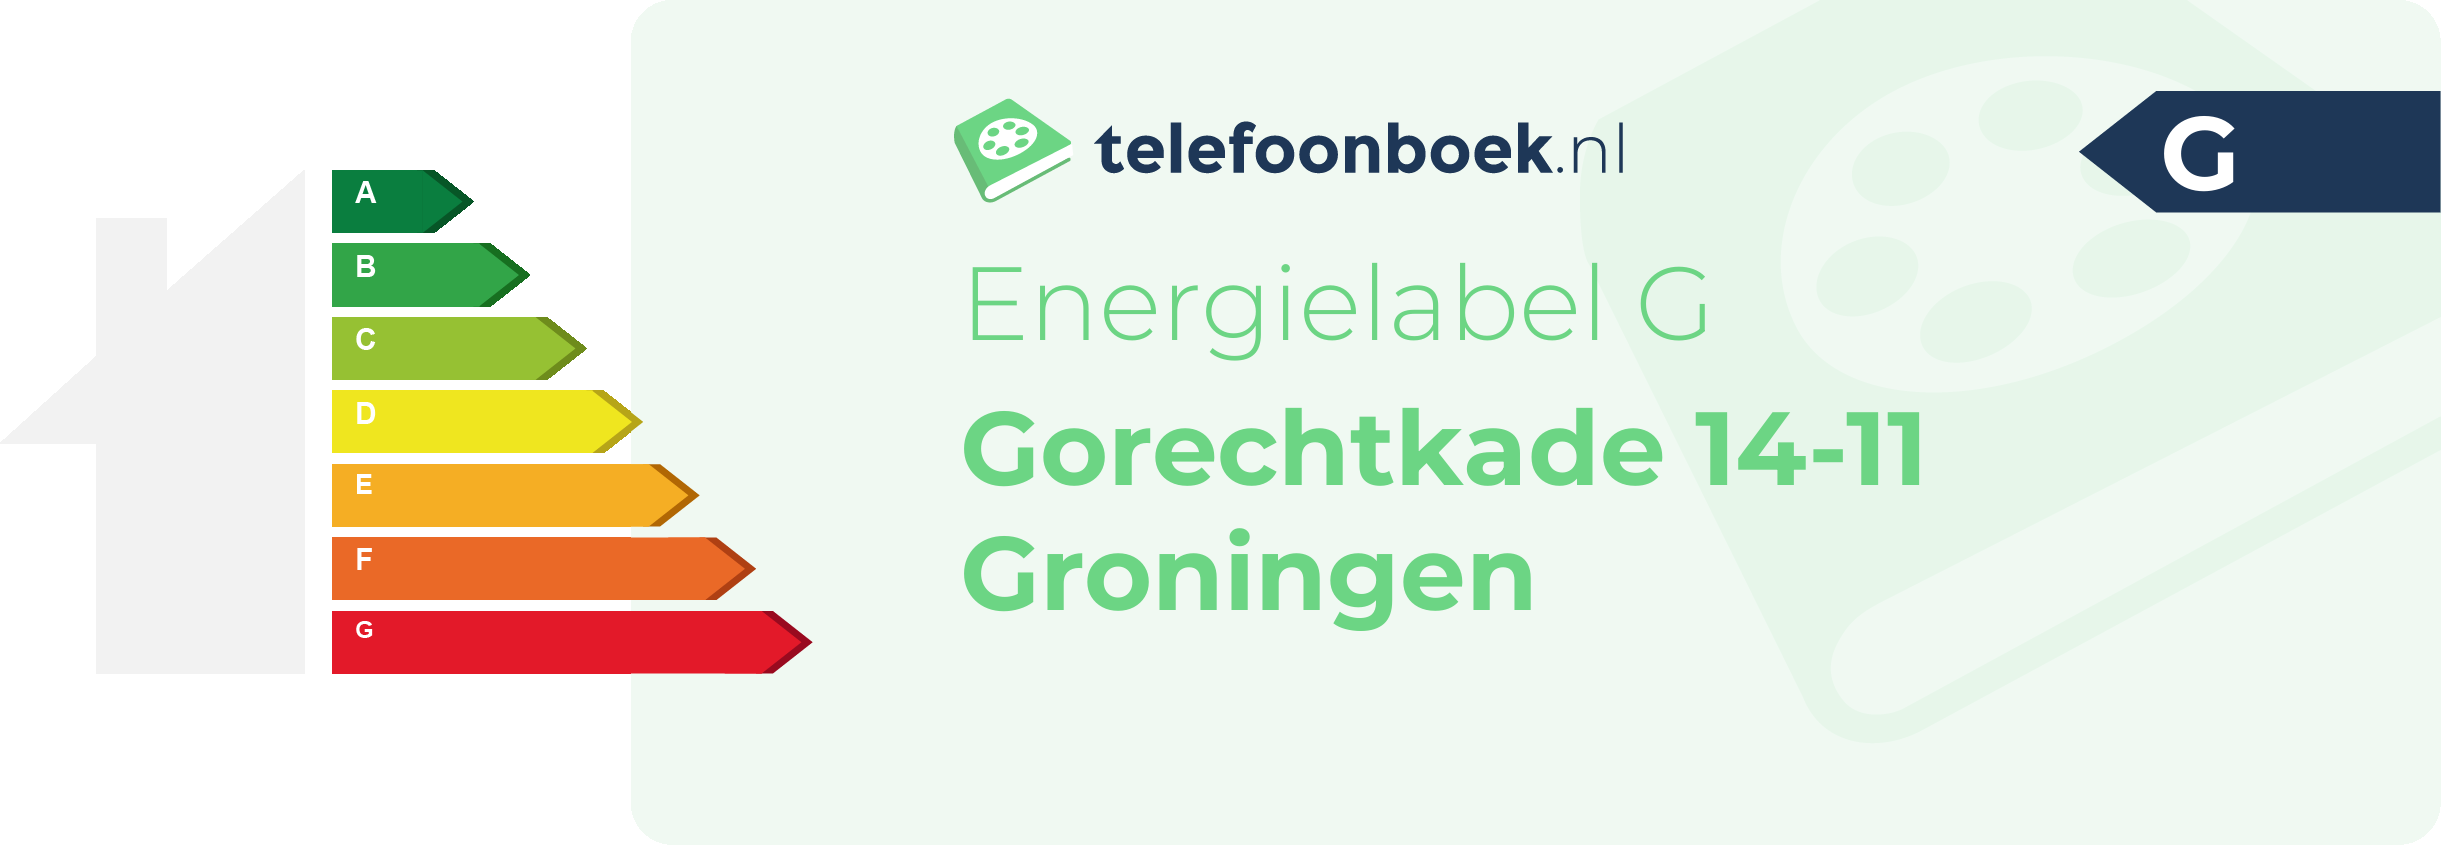 Energielabel Gorechtkade 14-11 Groningen